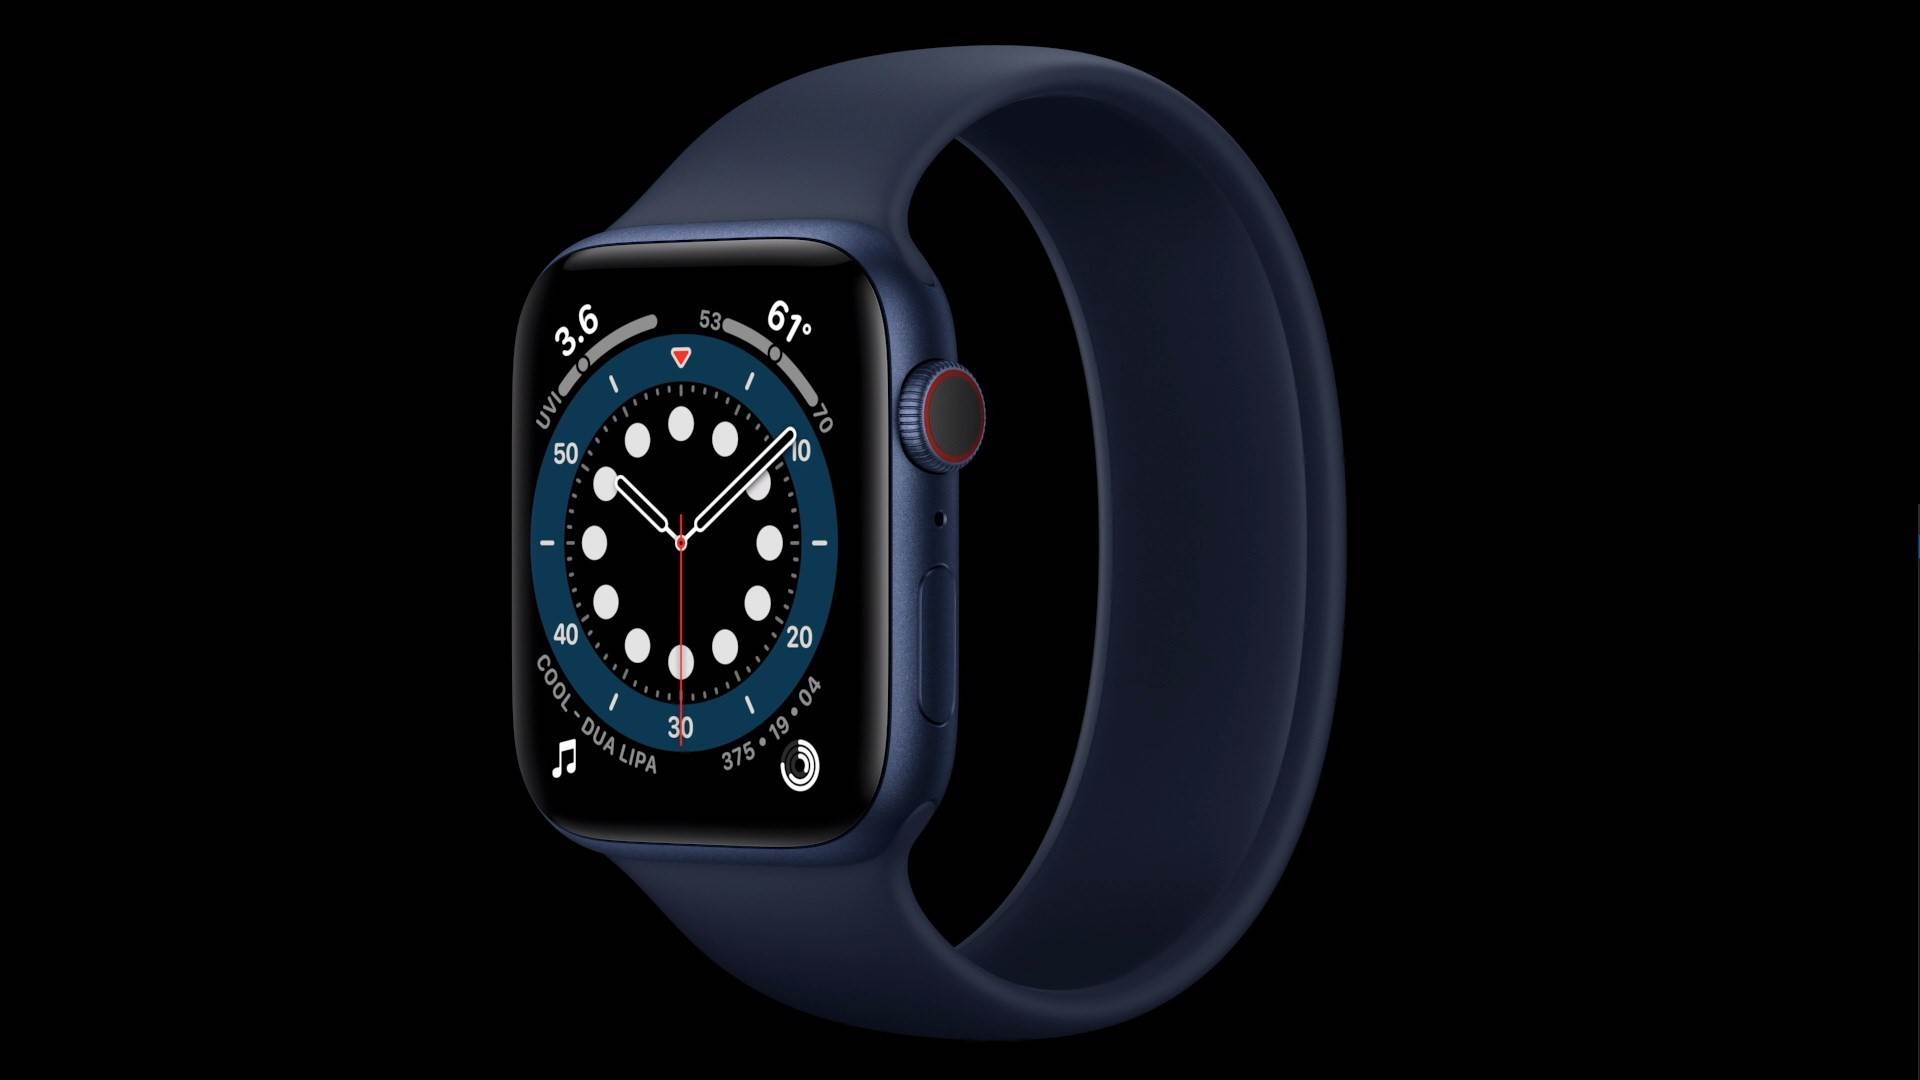  Apple predstavio sat sa "revolucionarnom opcijom", koju imaju gotovo svi satovi već godinama! (VIDEO) 